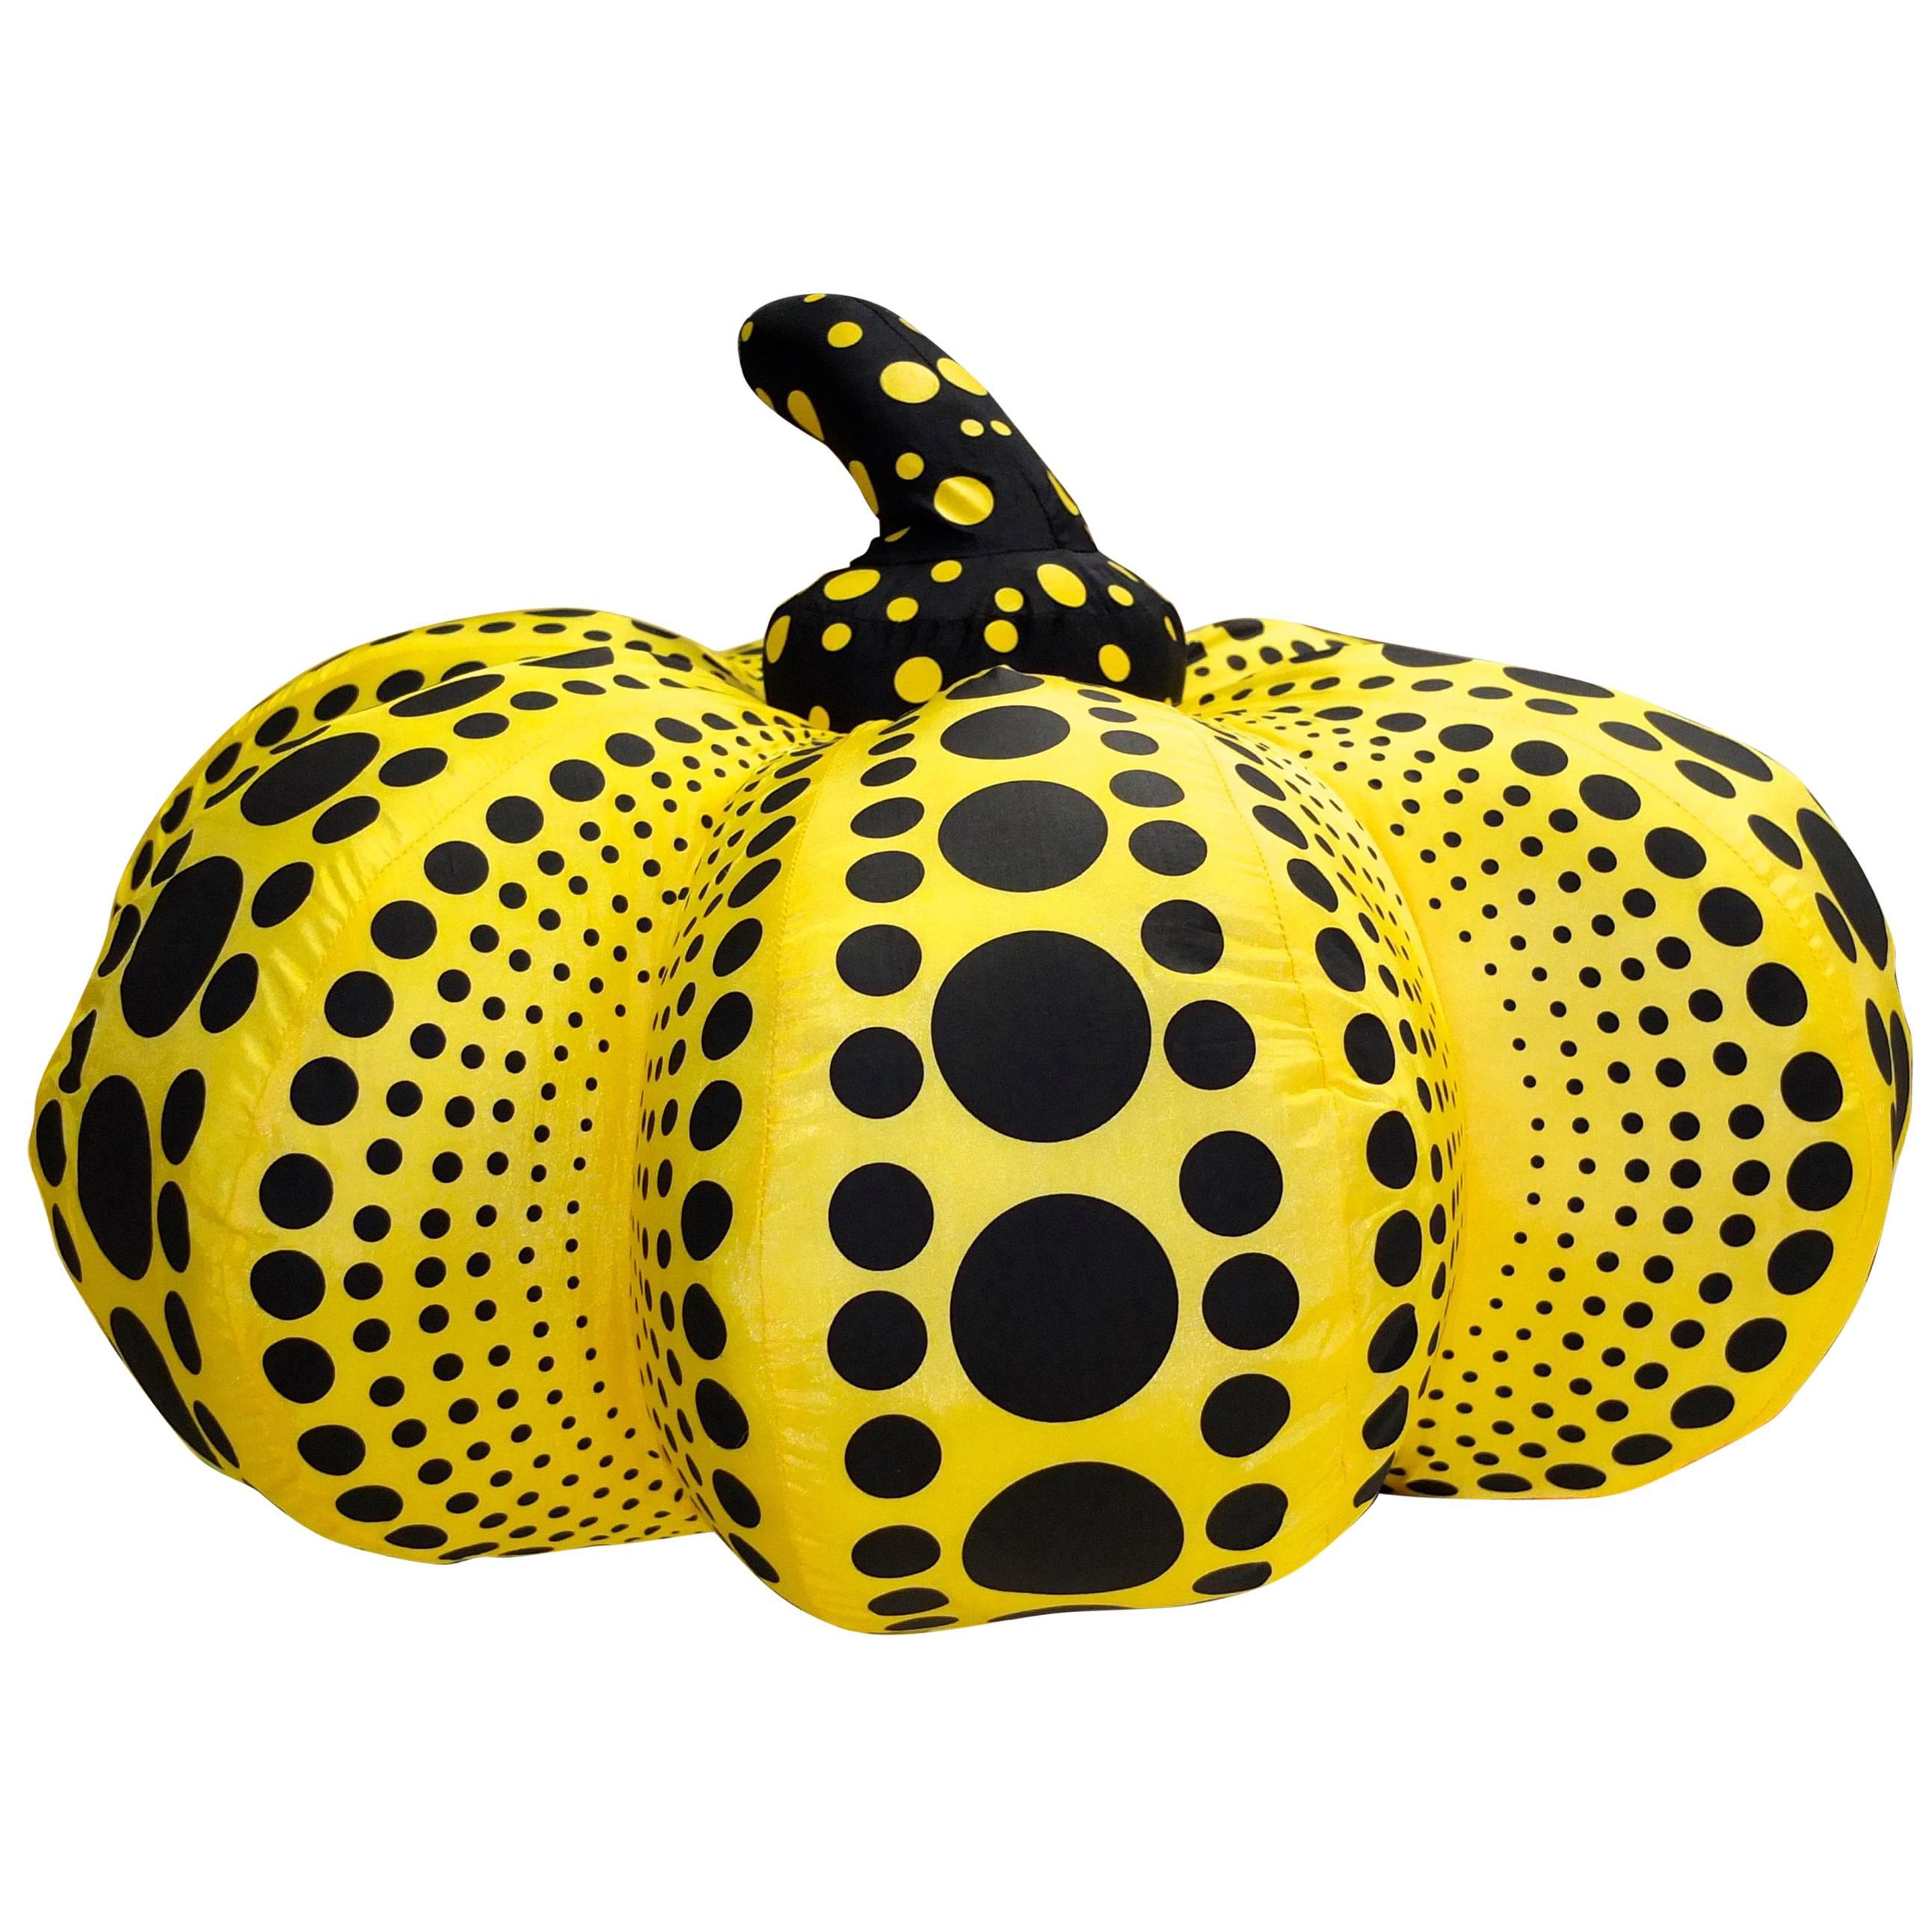 Yayoi Kusama "Dots Obsession" Stuffed Sculpture